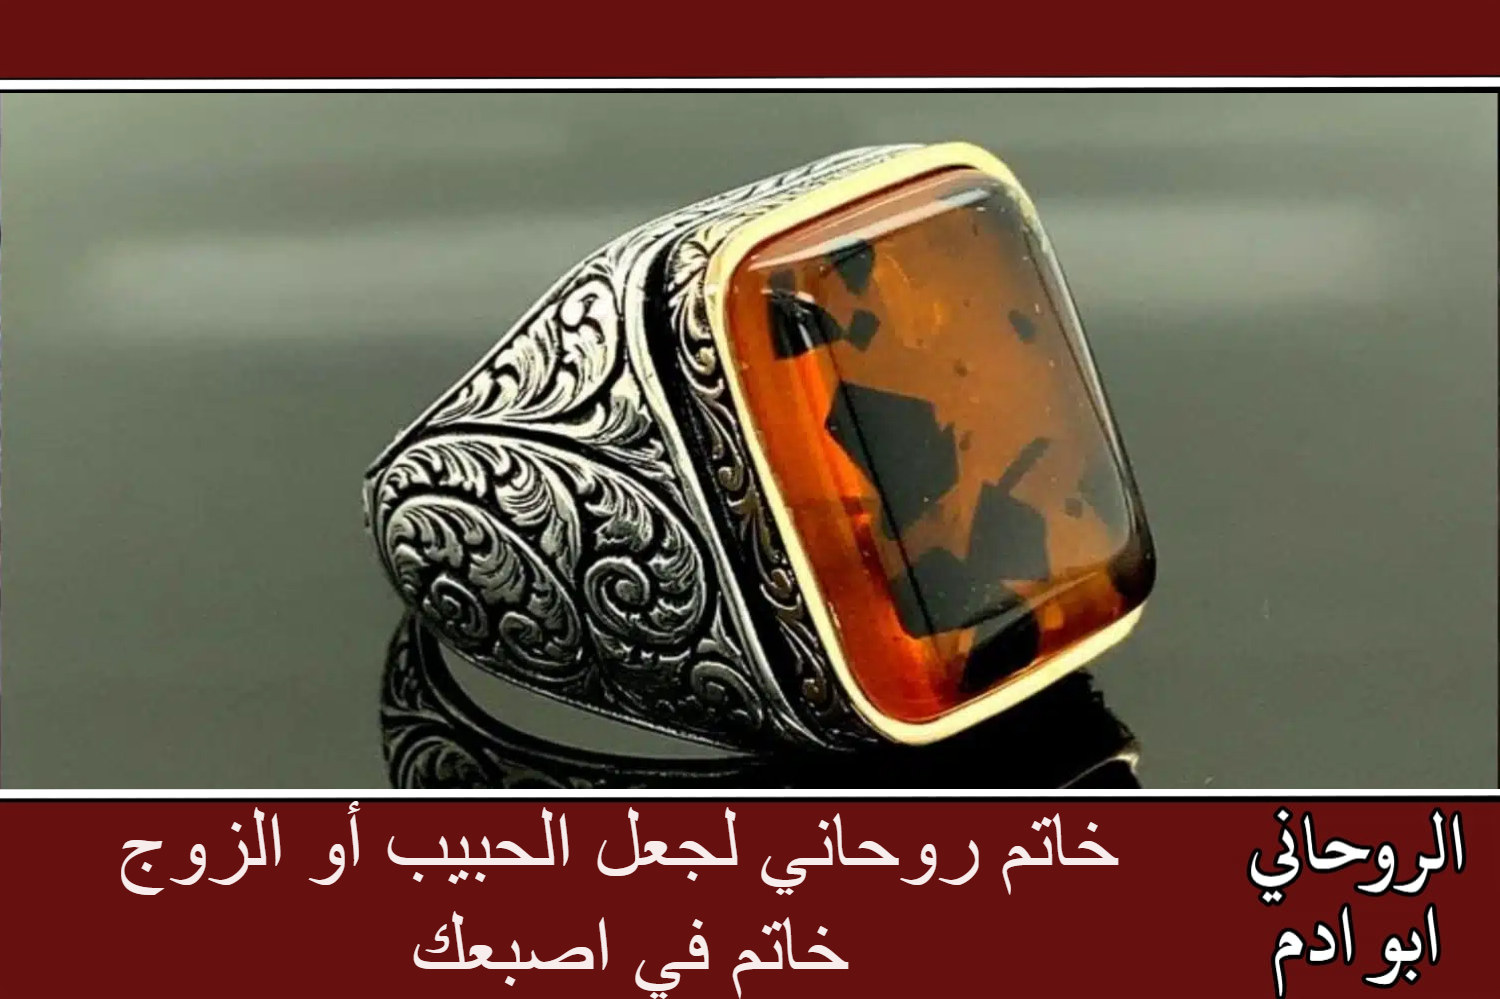 خاتم روحاني لجعل الحبيب أو الزوج خاتم في اصبعك